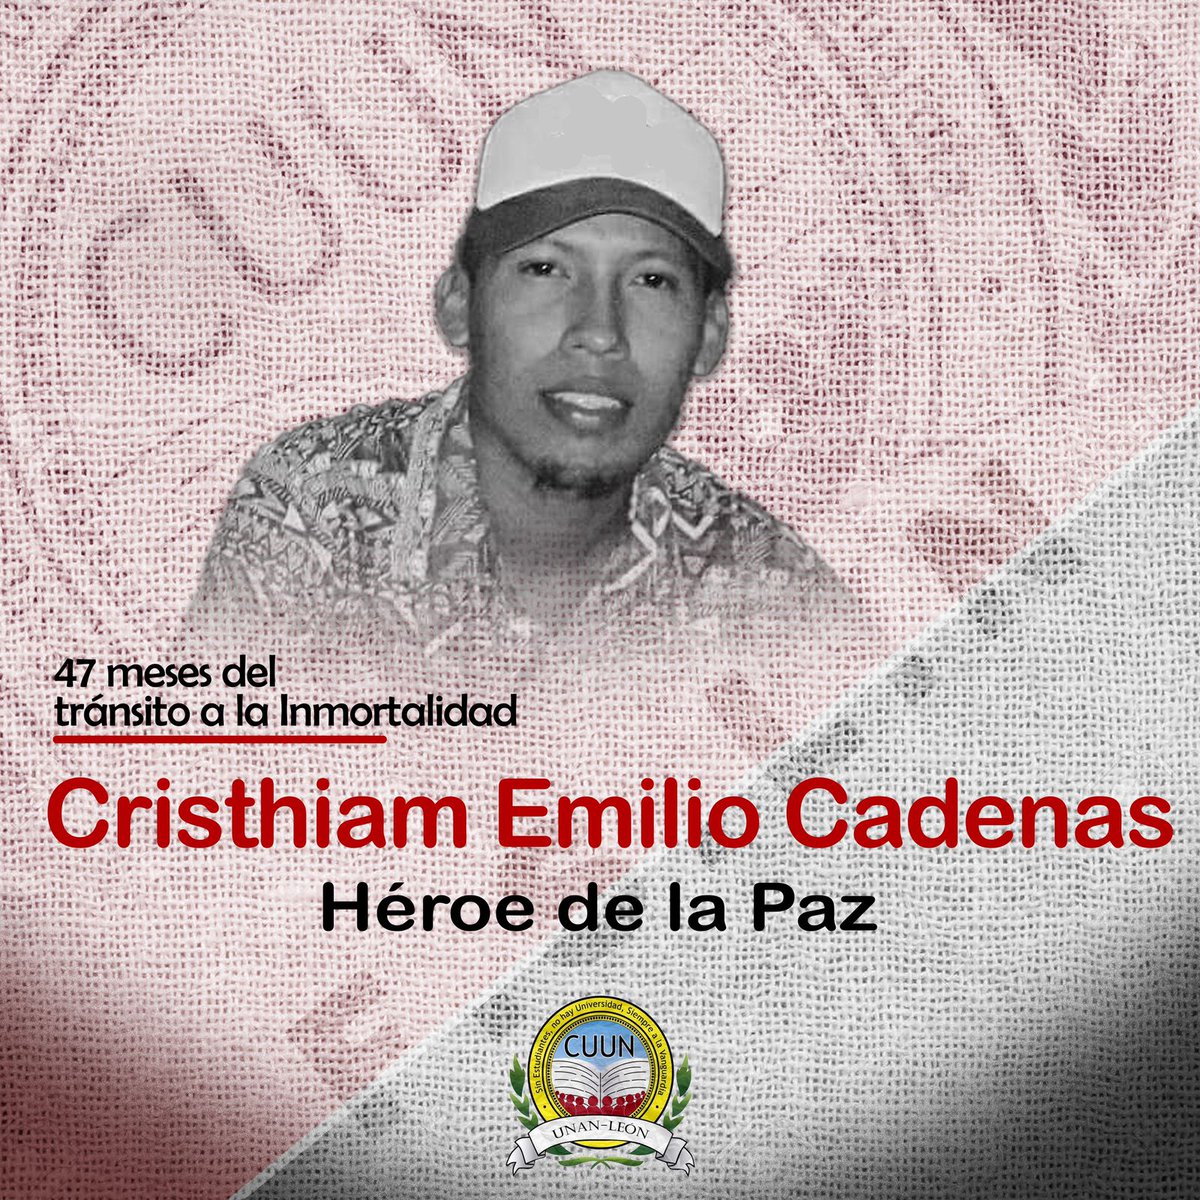 A 47 meses del tránsito a la inmortalidad de nuestro hermano Cristhiam Emilio Cadenas, Presente! Presente! Presente! #CUUN1914